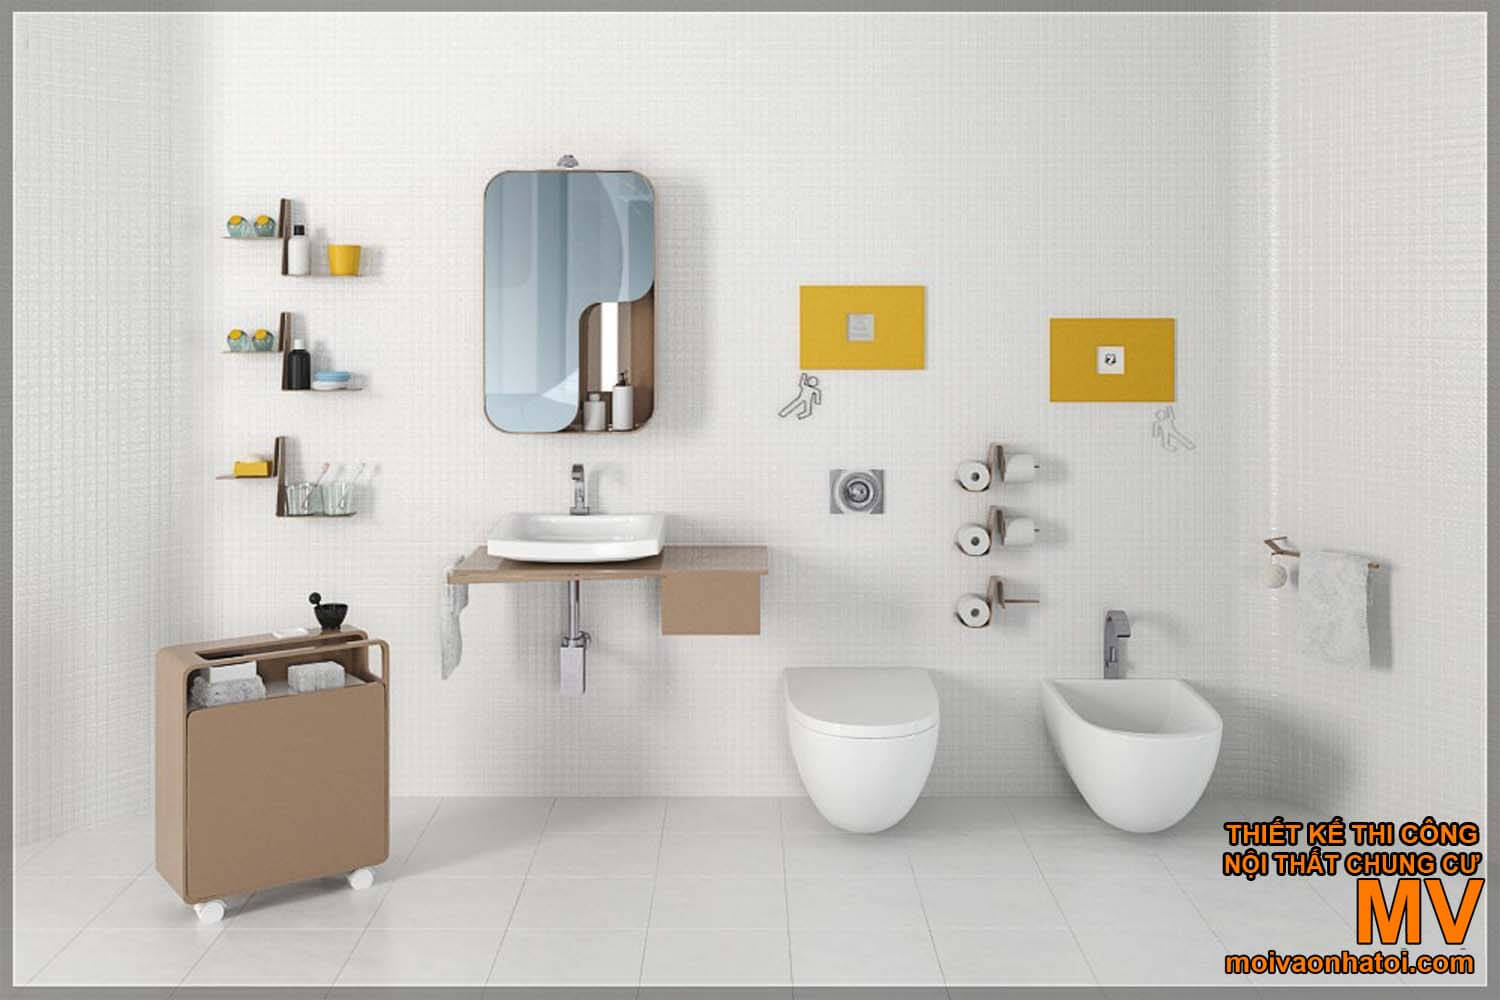 lavabo mycí obličej, krásný moderní design koupelny